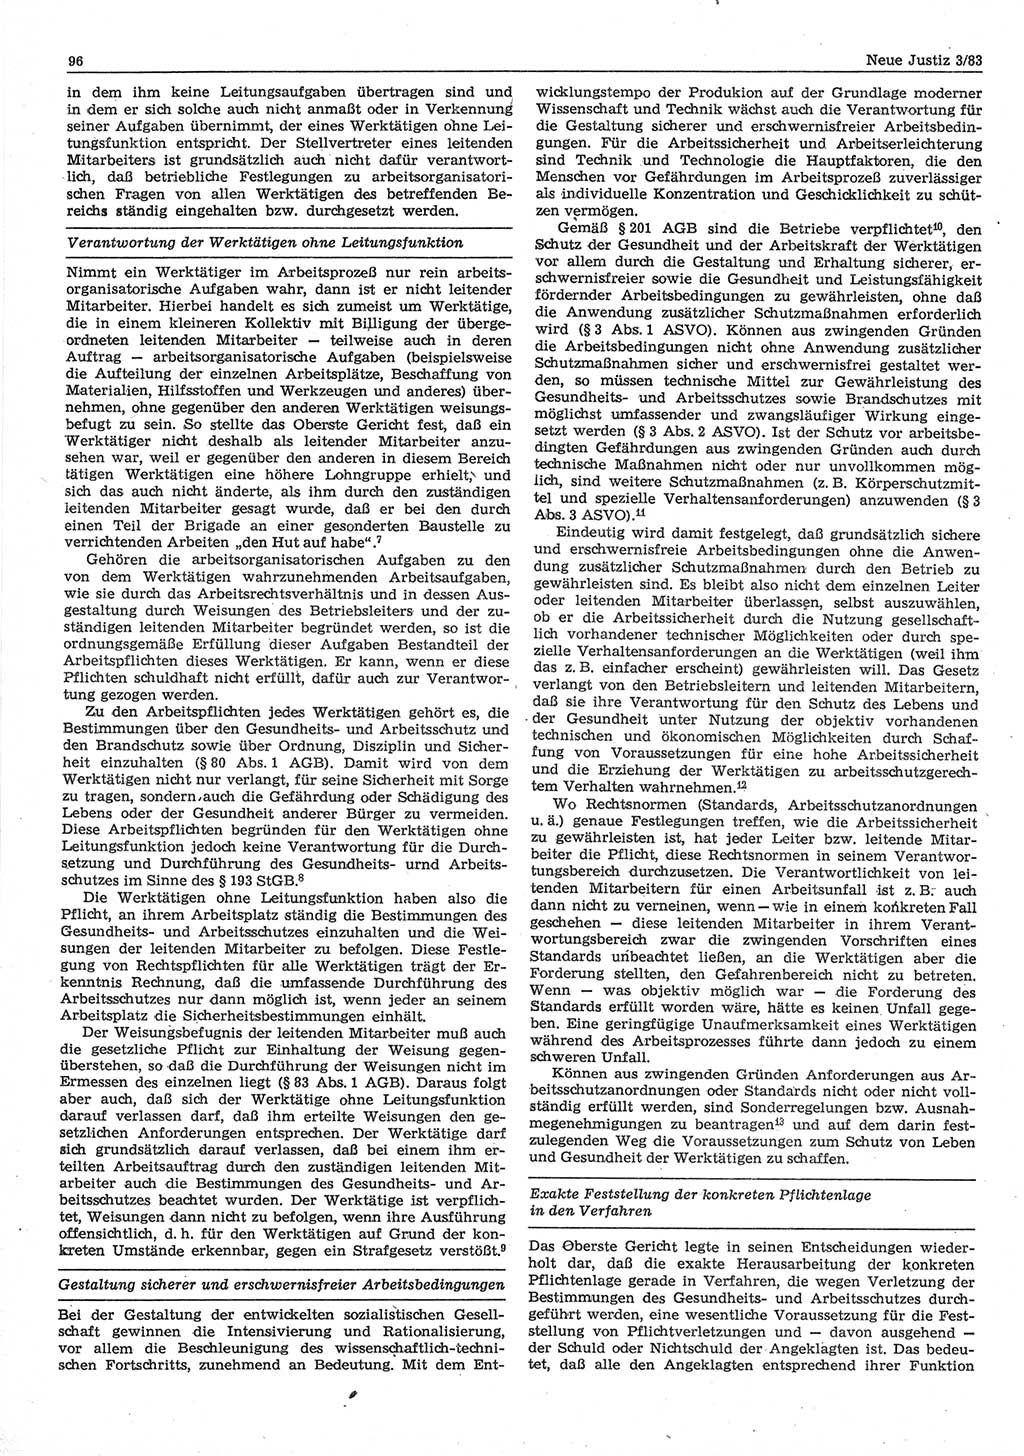 Neue Justiz (NJ), Zeitschrift für sozialistisches Recht und Gesetzlichkeit [Deutsche Demokratische Republik (DDR)], 37. Jahrgang 1983, Seite 96 (NJ DDR 1983, S. 96)